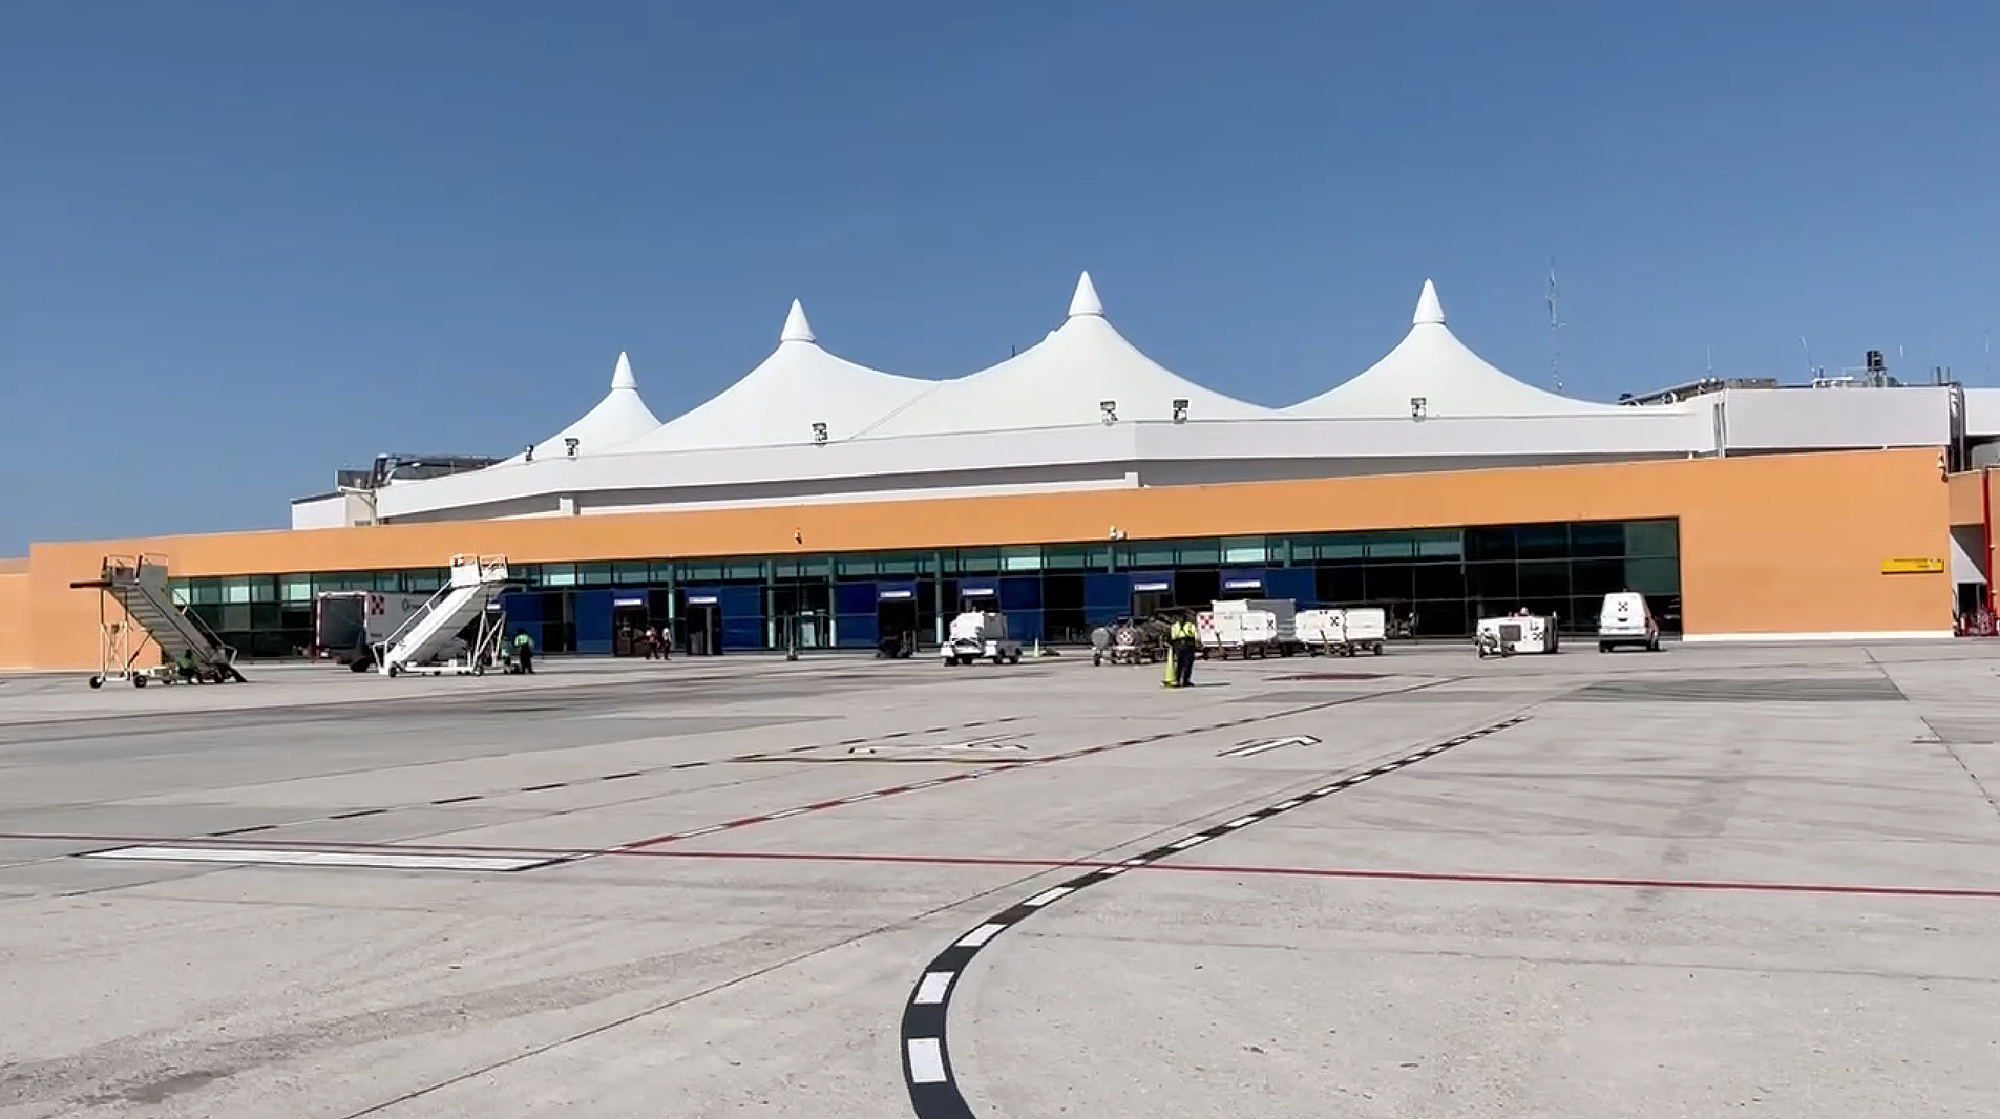 NOTA DE PRENSA: El Aeropuerto Internacional de Los Cabos confía su ampliación a medio y largo plazo a AERTEC